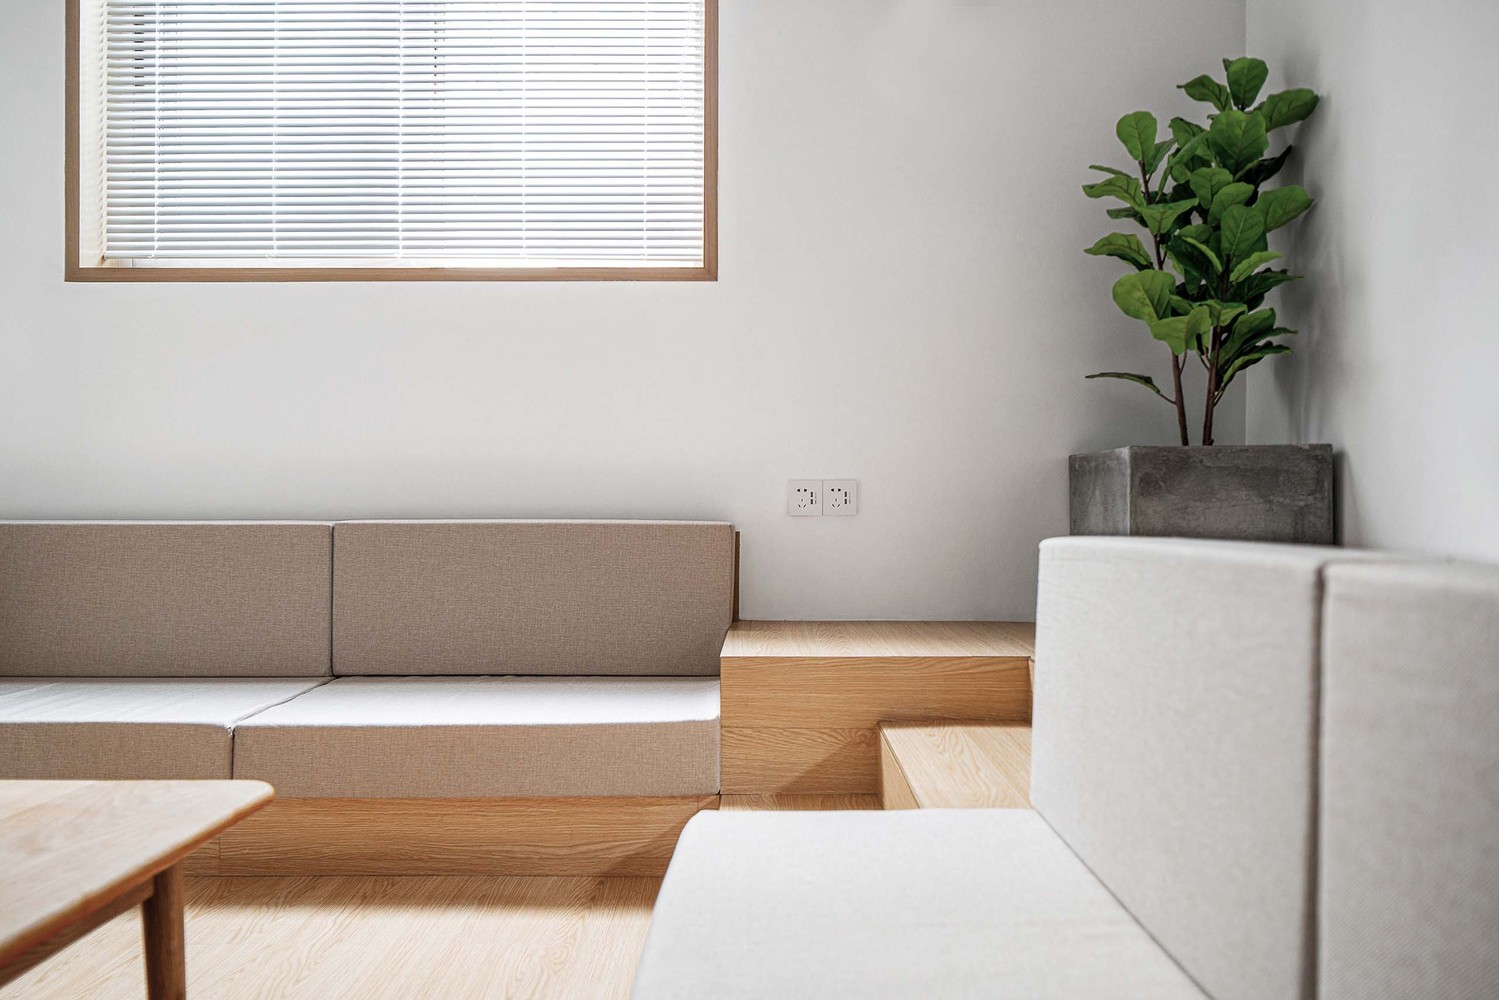 hình ảnh một góc phòng khách với sofa bọc nệm màu ghi, bàn trà gỗ, chậu cây ở góc phòng, rèm cửa xếp